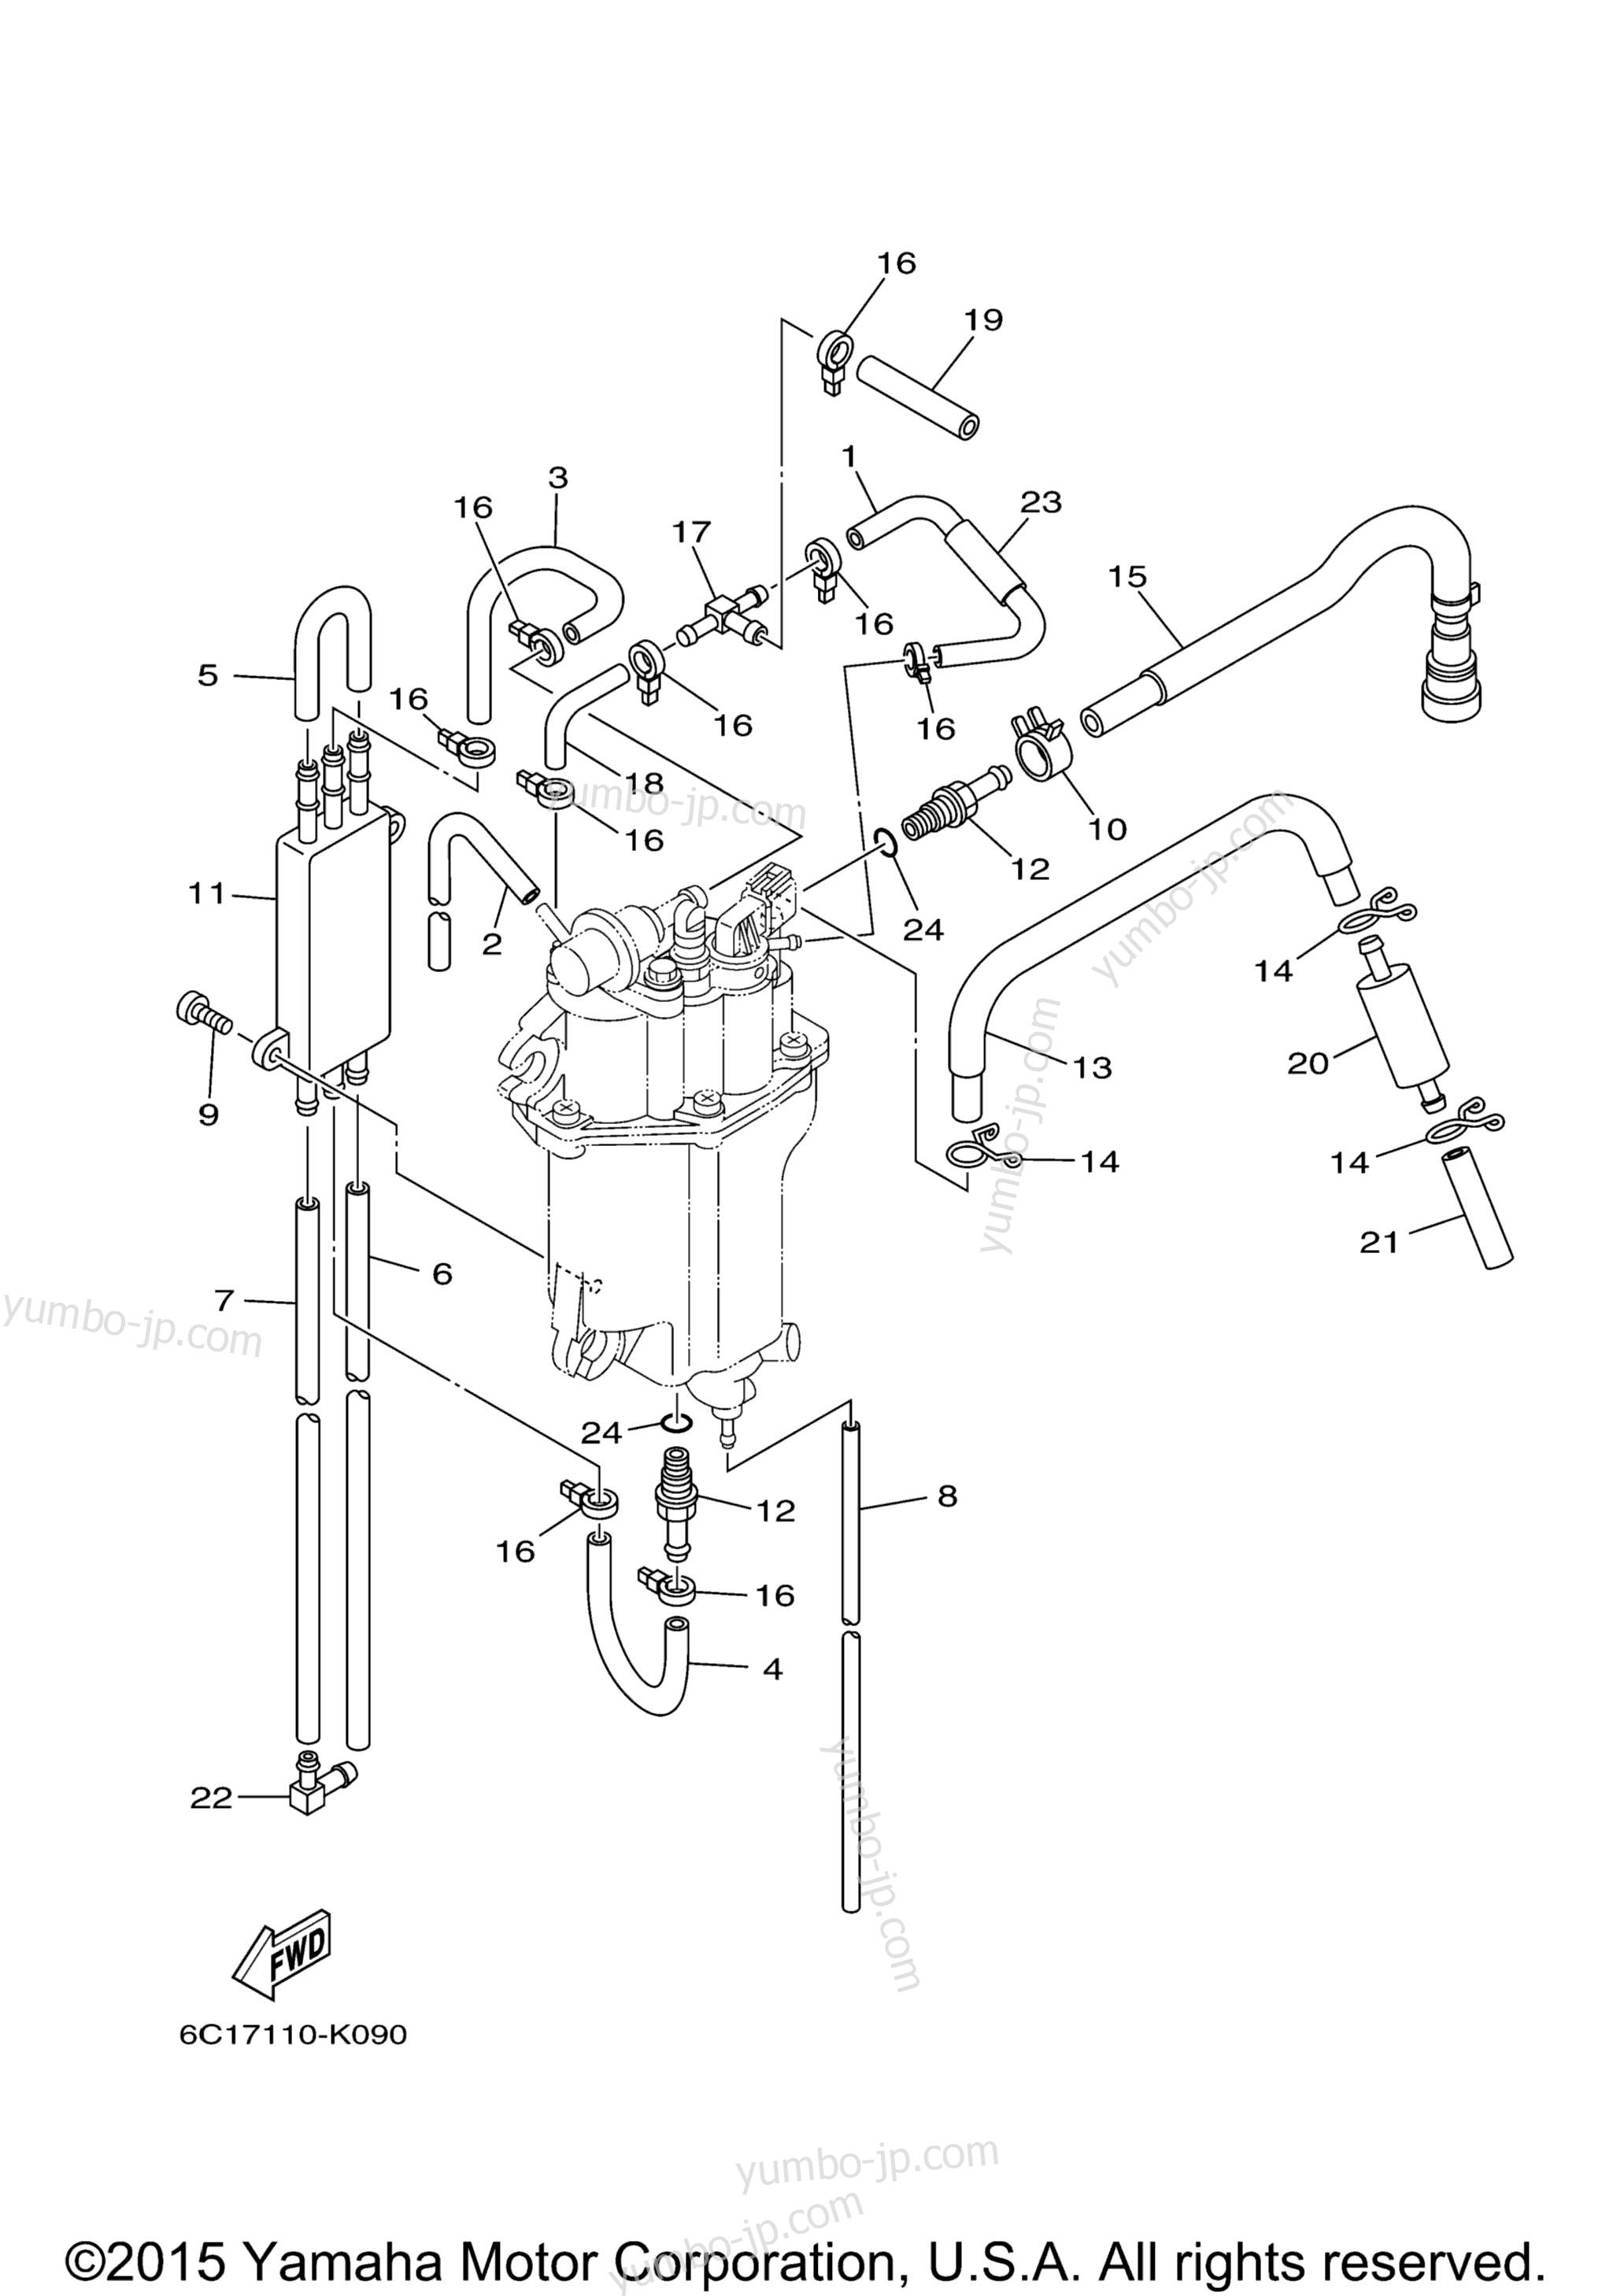 Fuel Injection Pump 2 для лодочных моторов YAMAHA T60TLR_041 (0411) 2006 г.